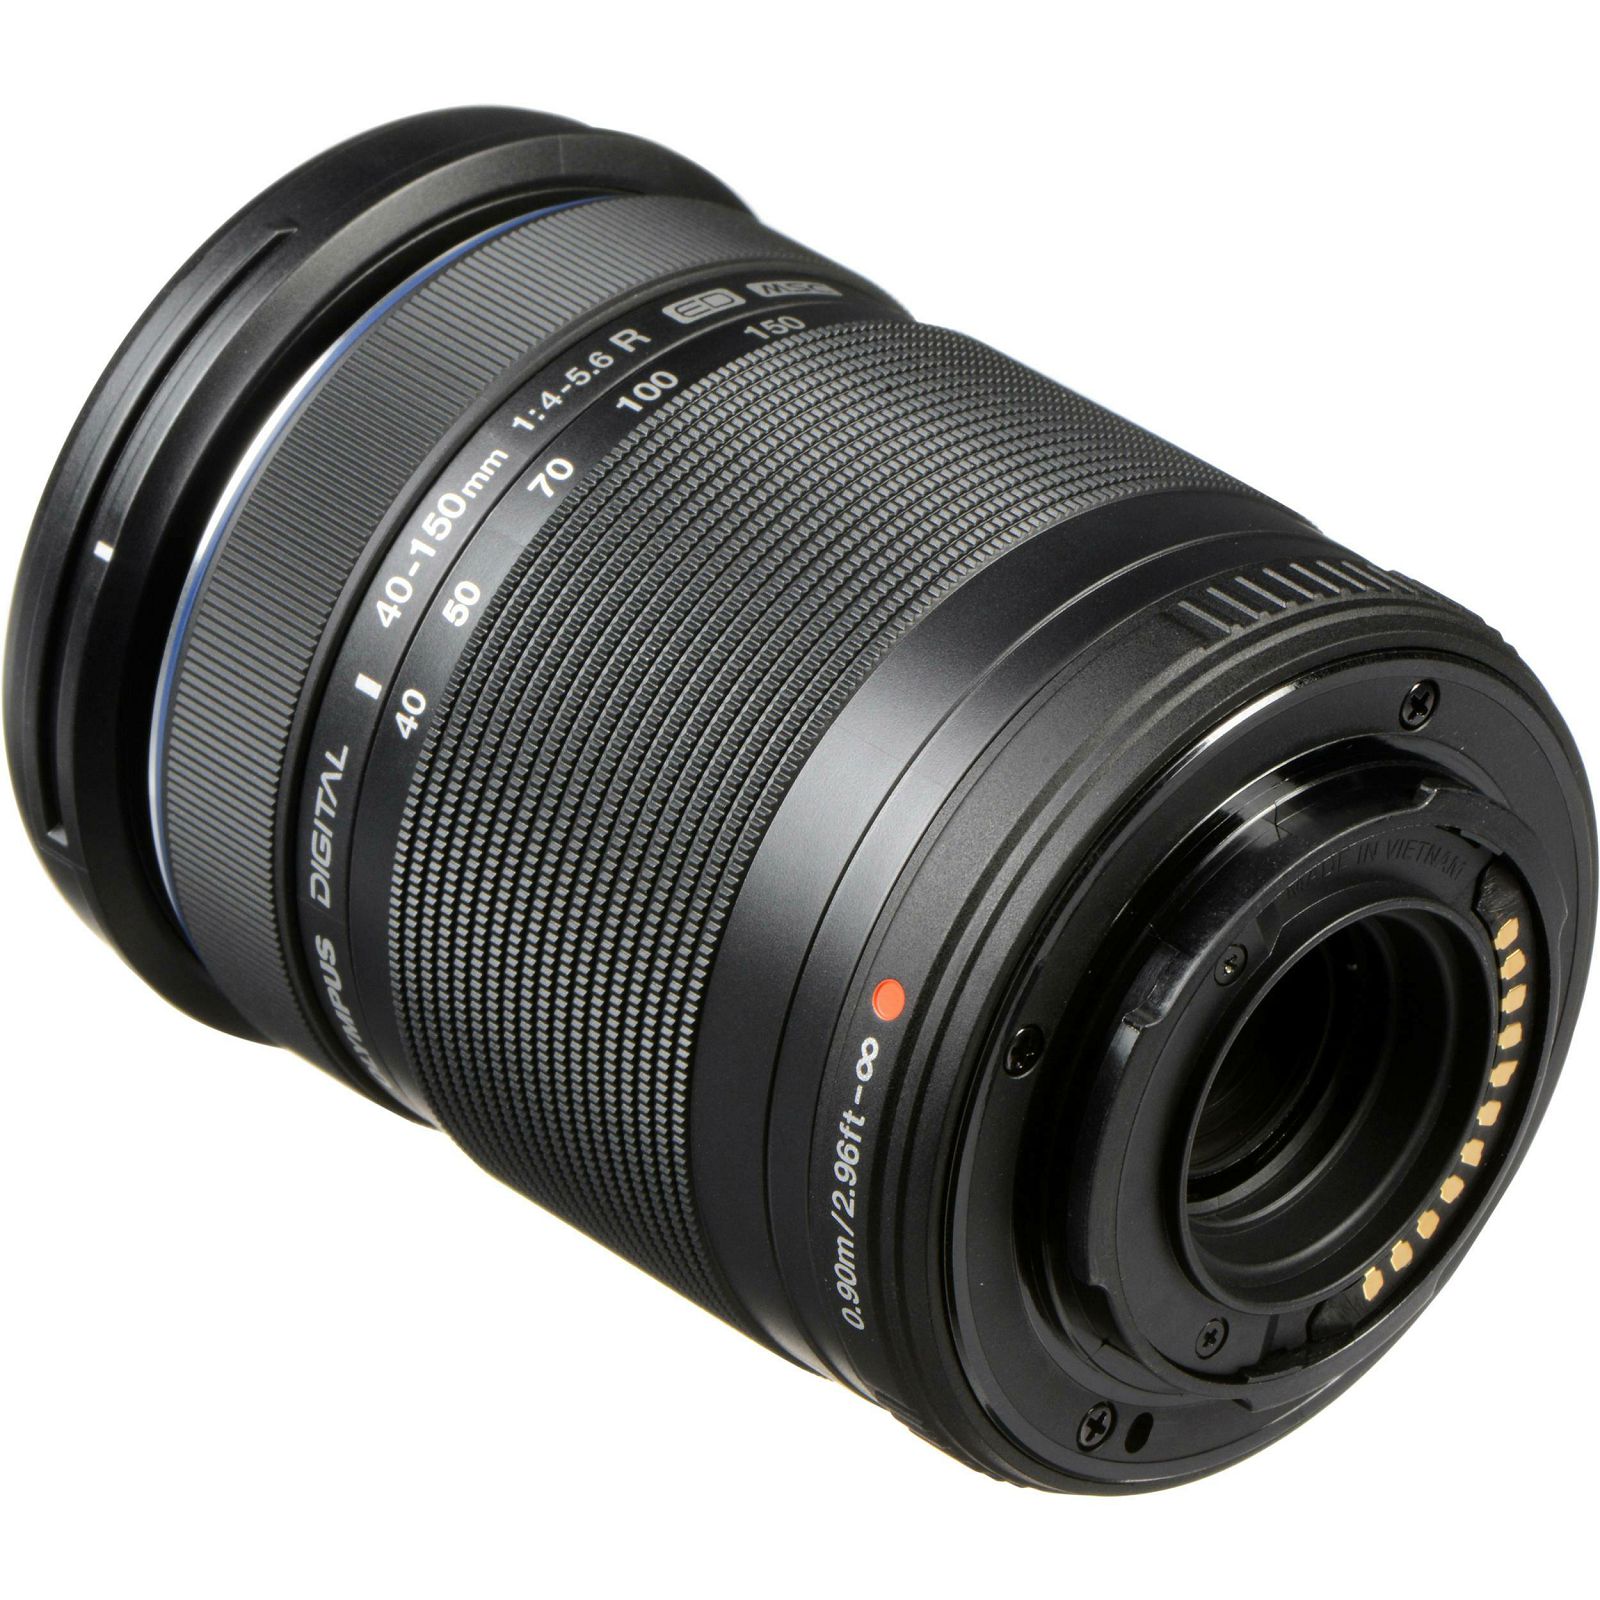 Olympus Zuiko Digital ED 40-150mm 1:4.0-5.6 / EZ-4050-2 Standard Digital SLR DSLR objektiv lens lenses N2517292